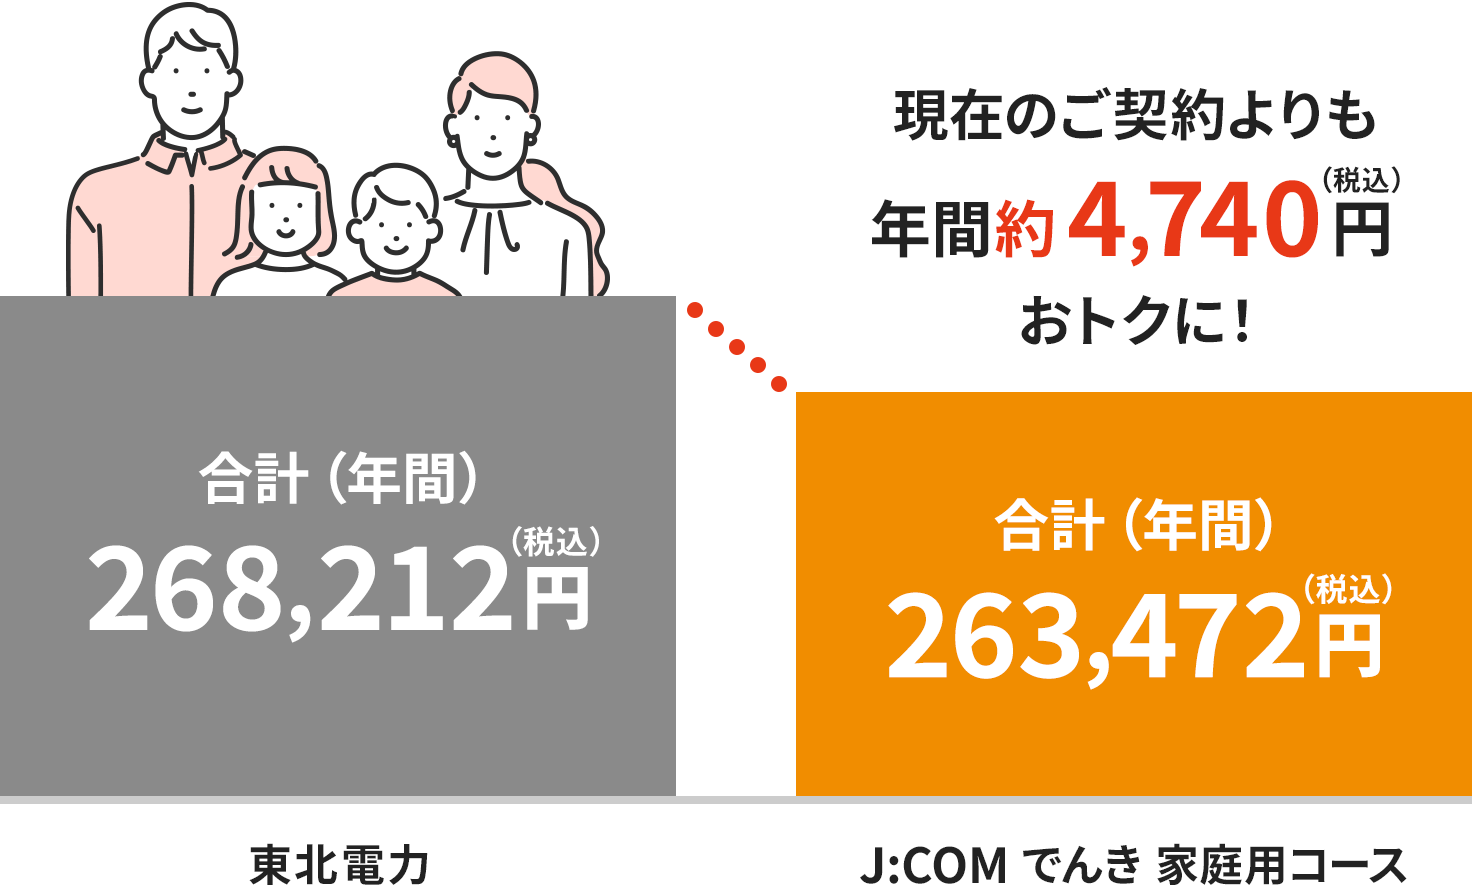 Hình ảnh phí tại khu vực Điện lực Tohoku (dành cho hộ gia đình 4 người)